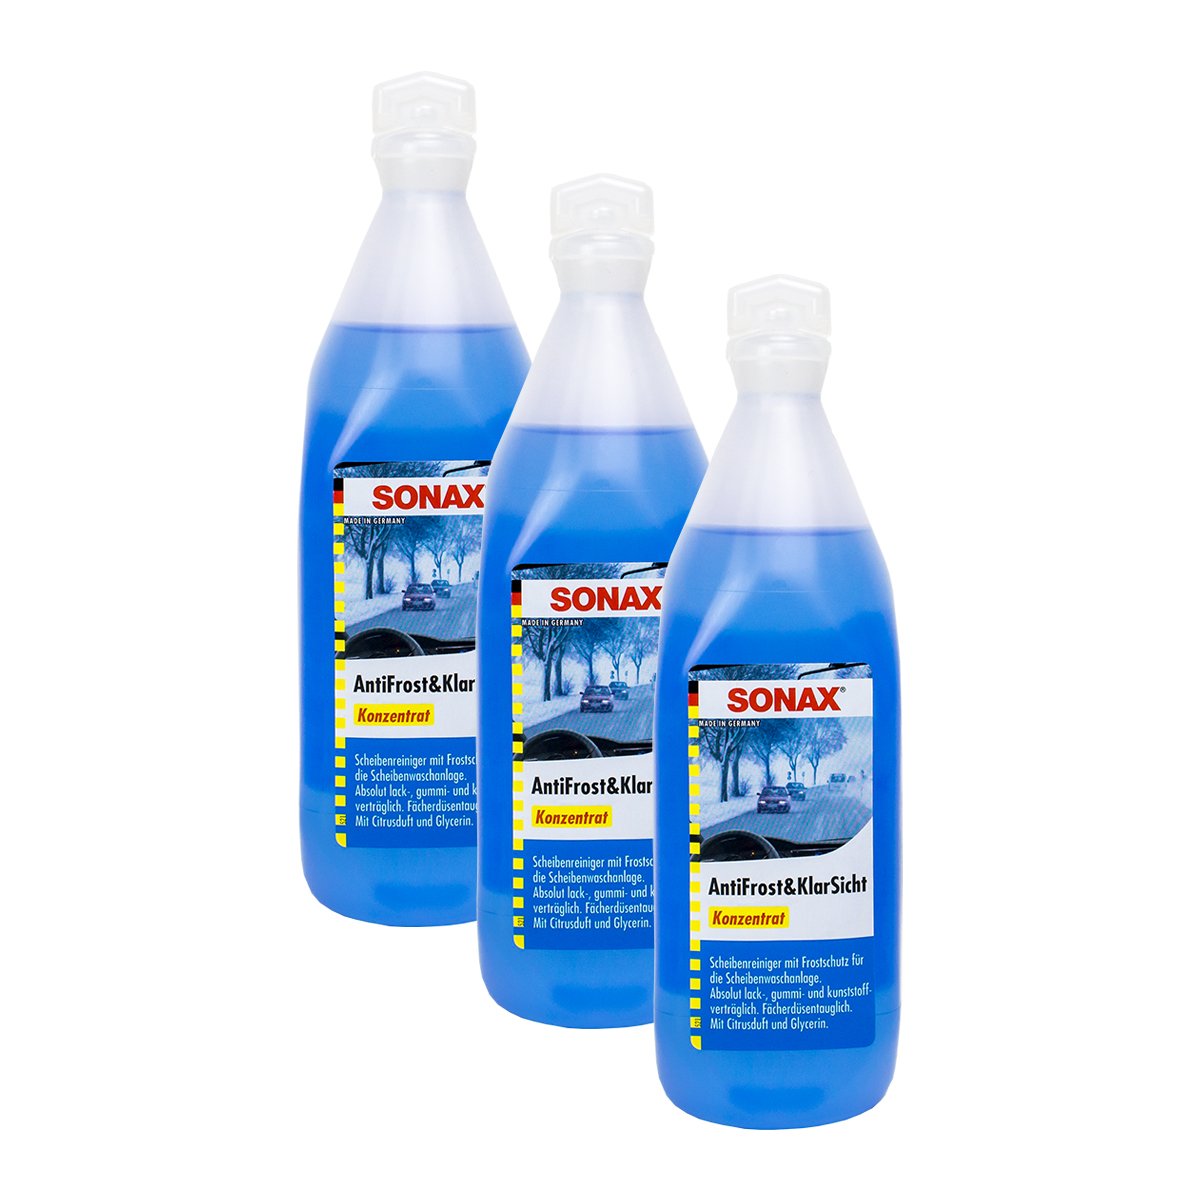 SONAX 3X 03321000 AntiFrost&KlarSicht Konzentrat Frostschutz Citrusduft 250ml von SONAX